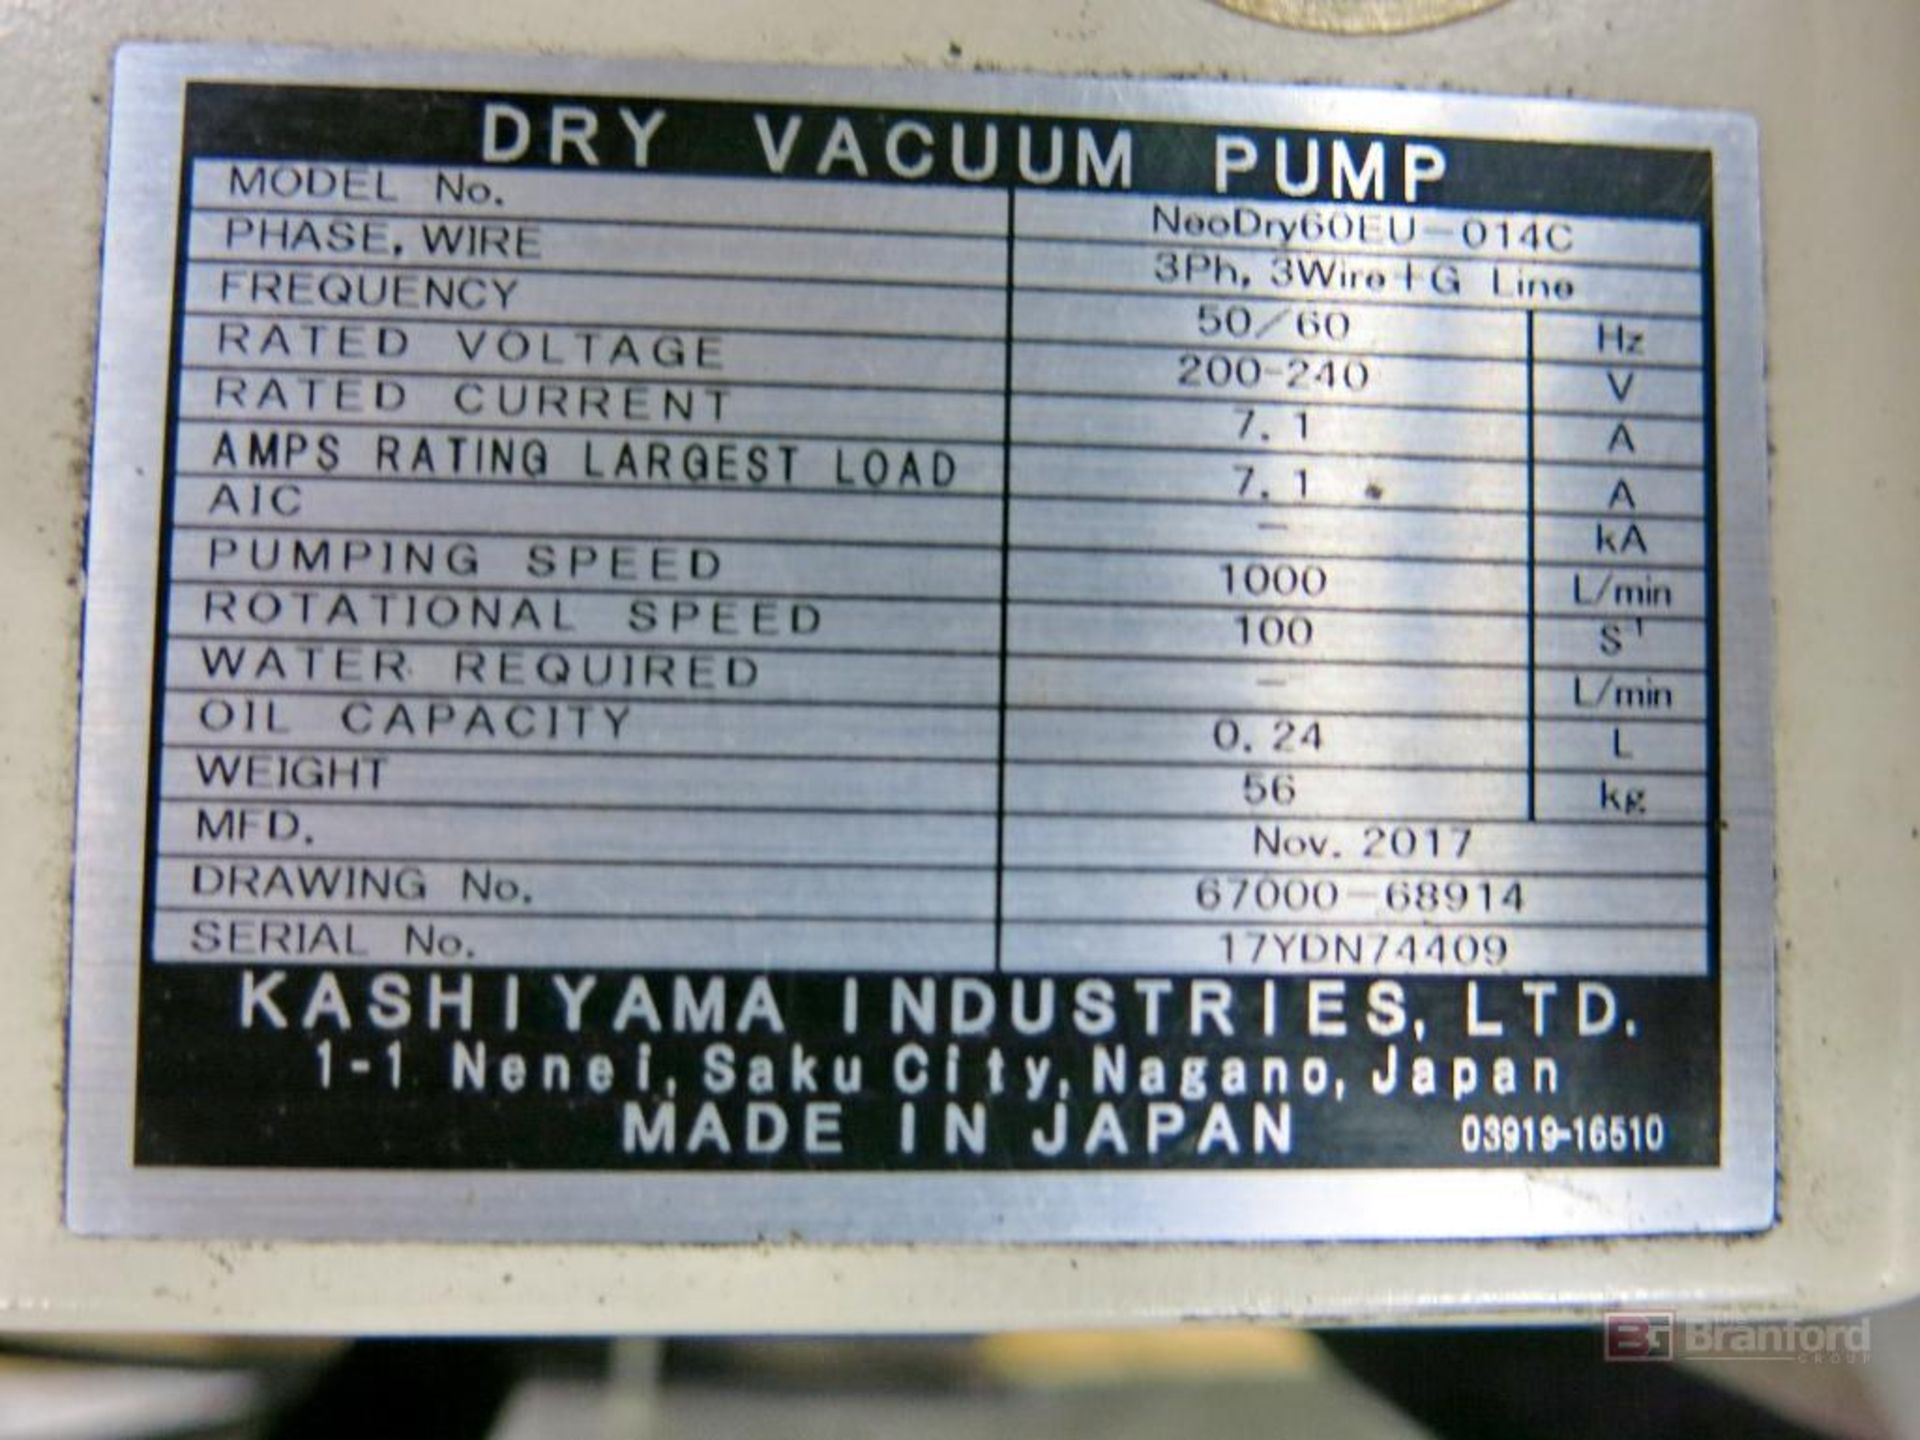 Kashiyama Neodry 36E Dry Vacuum Pump - Image 3 of 4